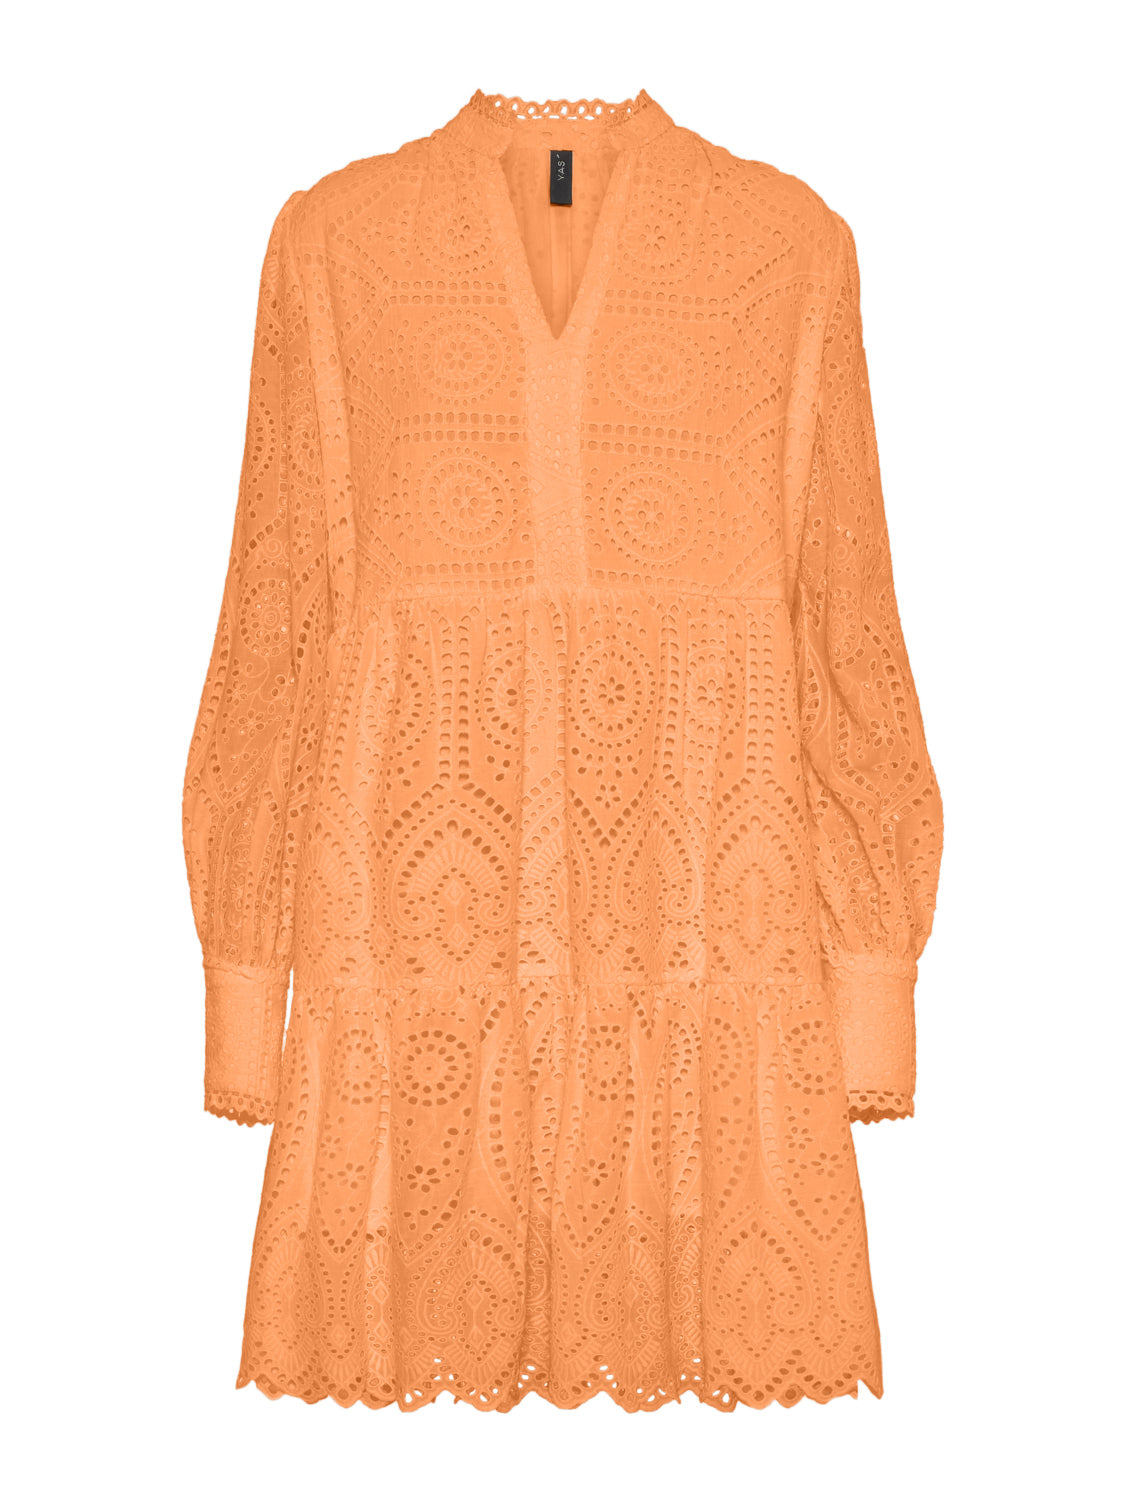 YASHOLI Dress - Mock Orange